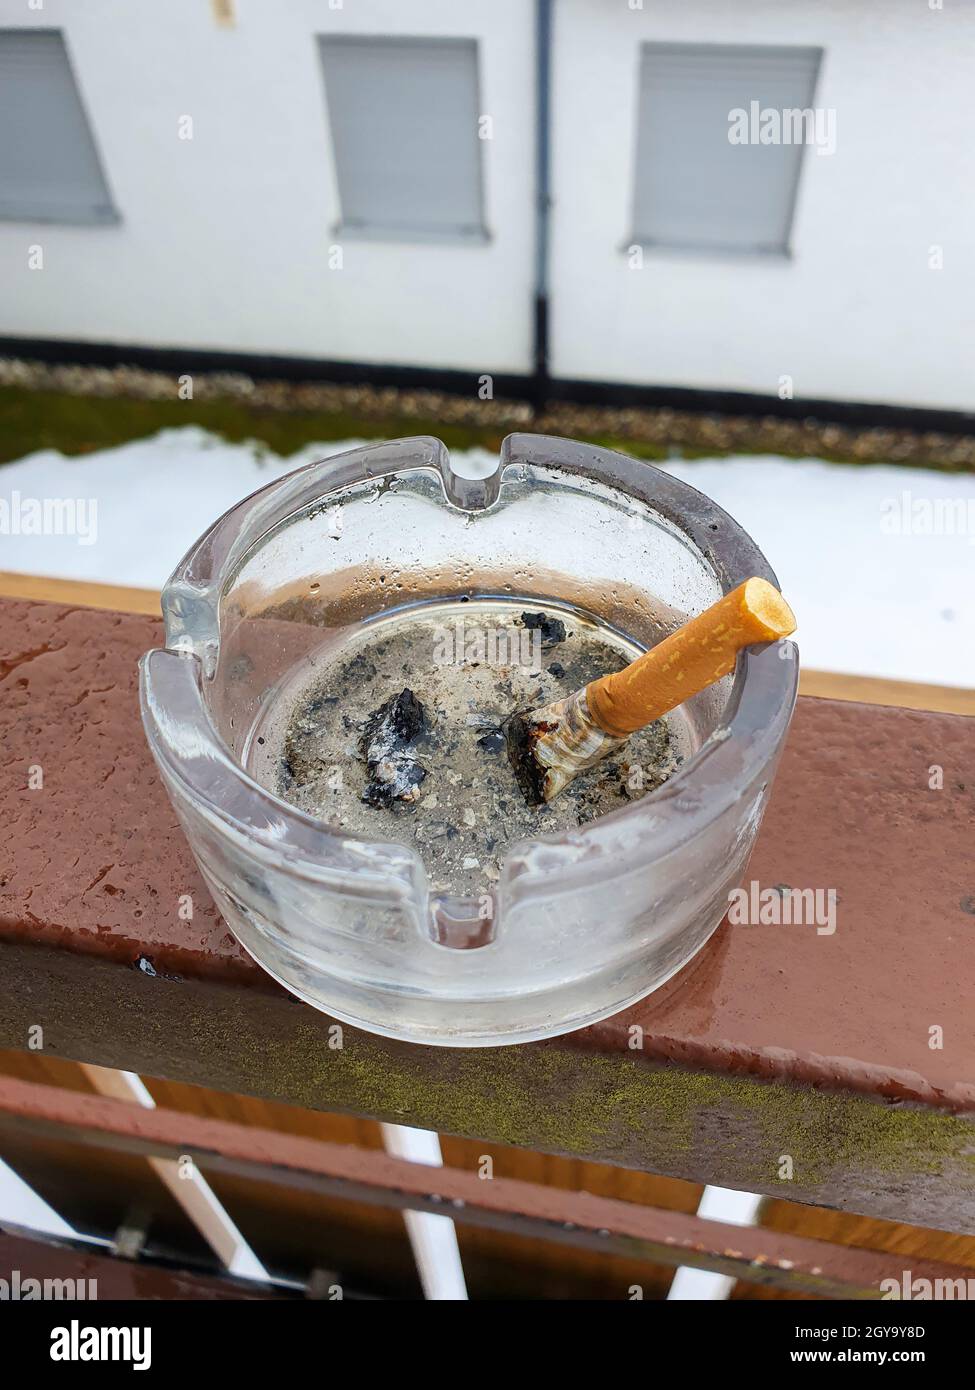 Draußen auf dem Balkon eine ausstachelte Zigarette in einem Aschenbecher.  Hören Sie auf zu rauchen Stockfotografie - Alamy